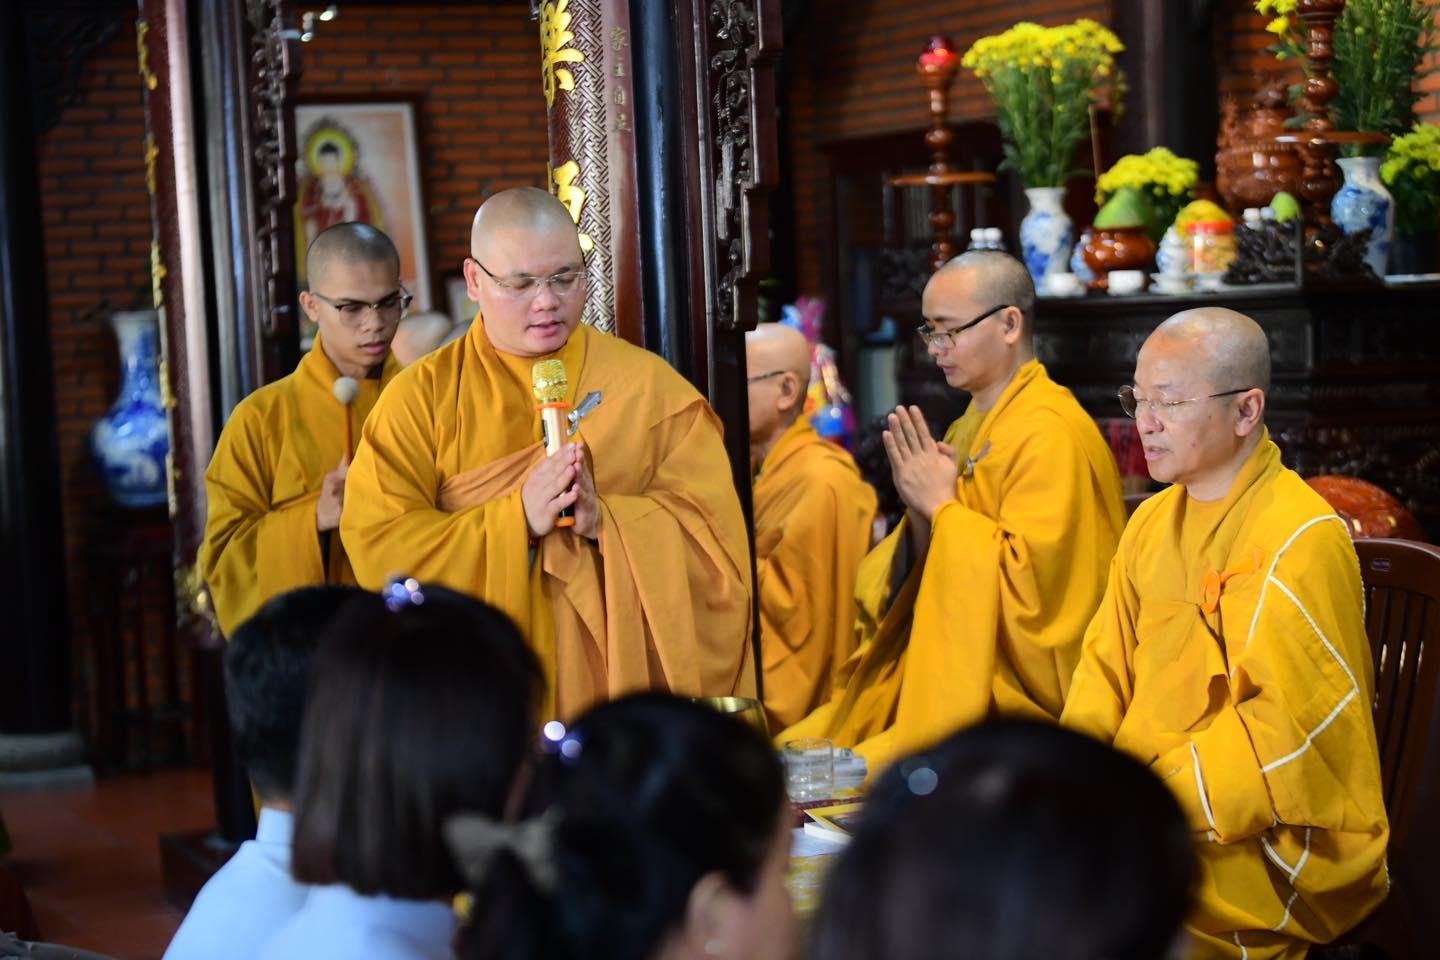 Tăng đoàn chùa Giác Ngộ trang nghiêm thực hiện khóa lễ cầu an đầu năm hộ trì doanh nghiệp Phật tử